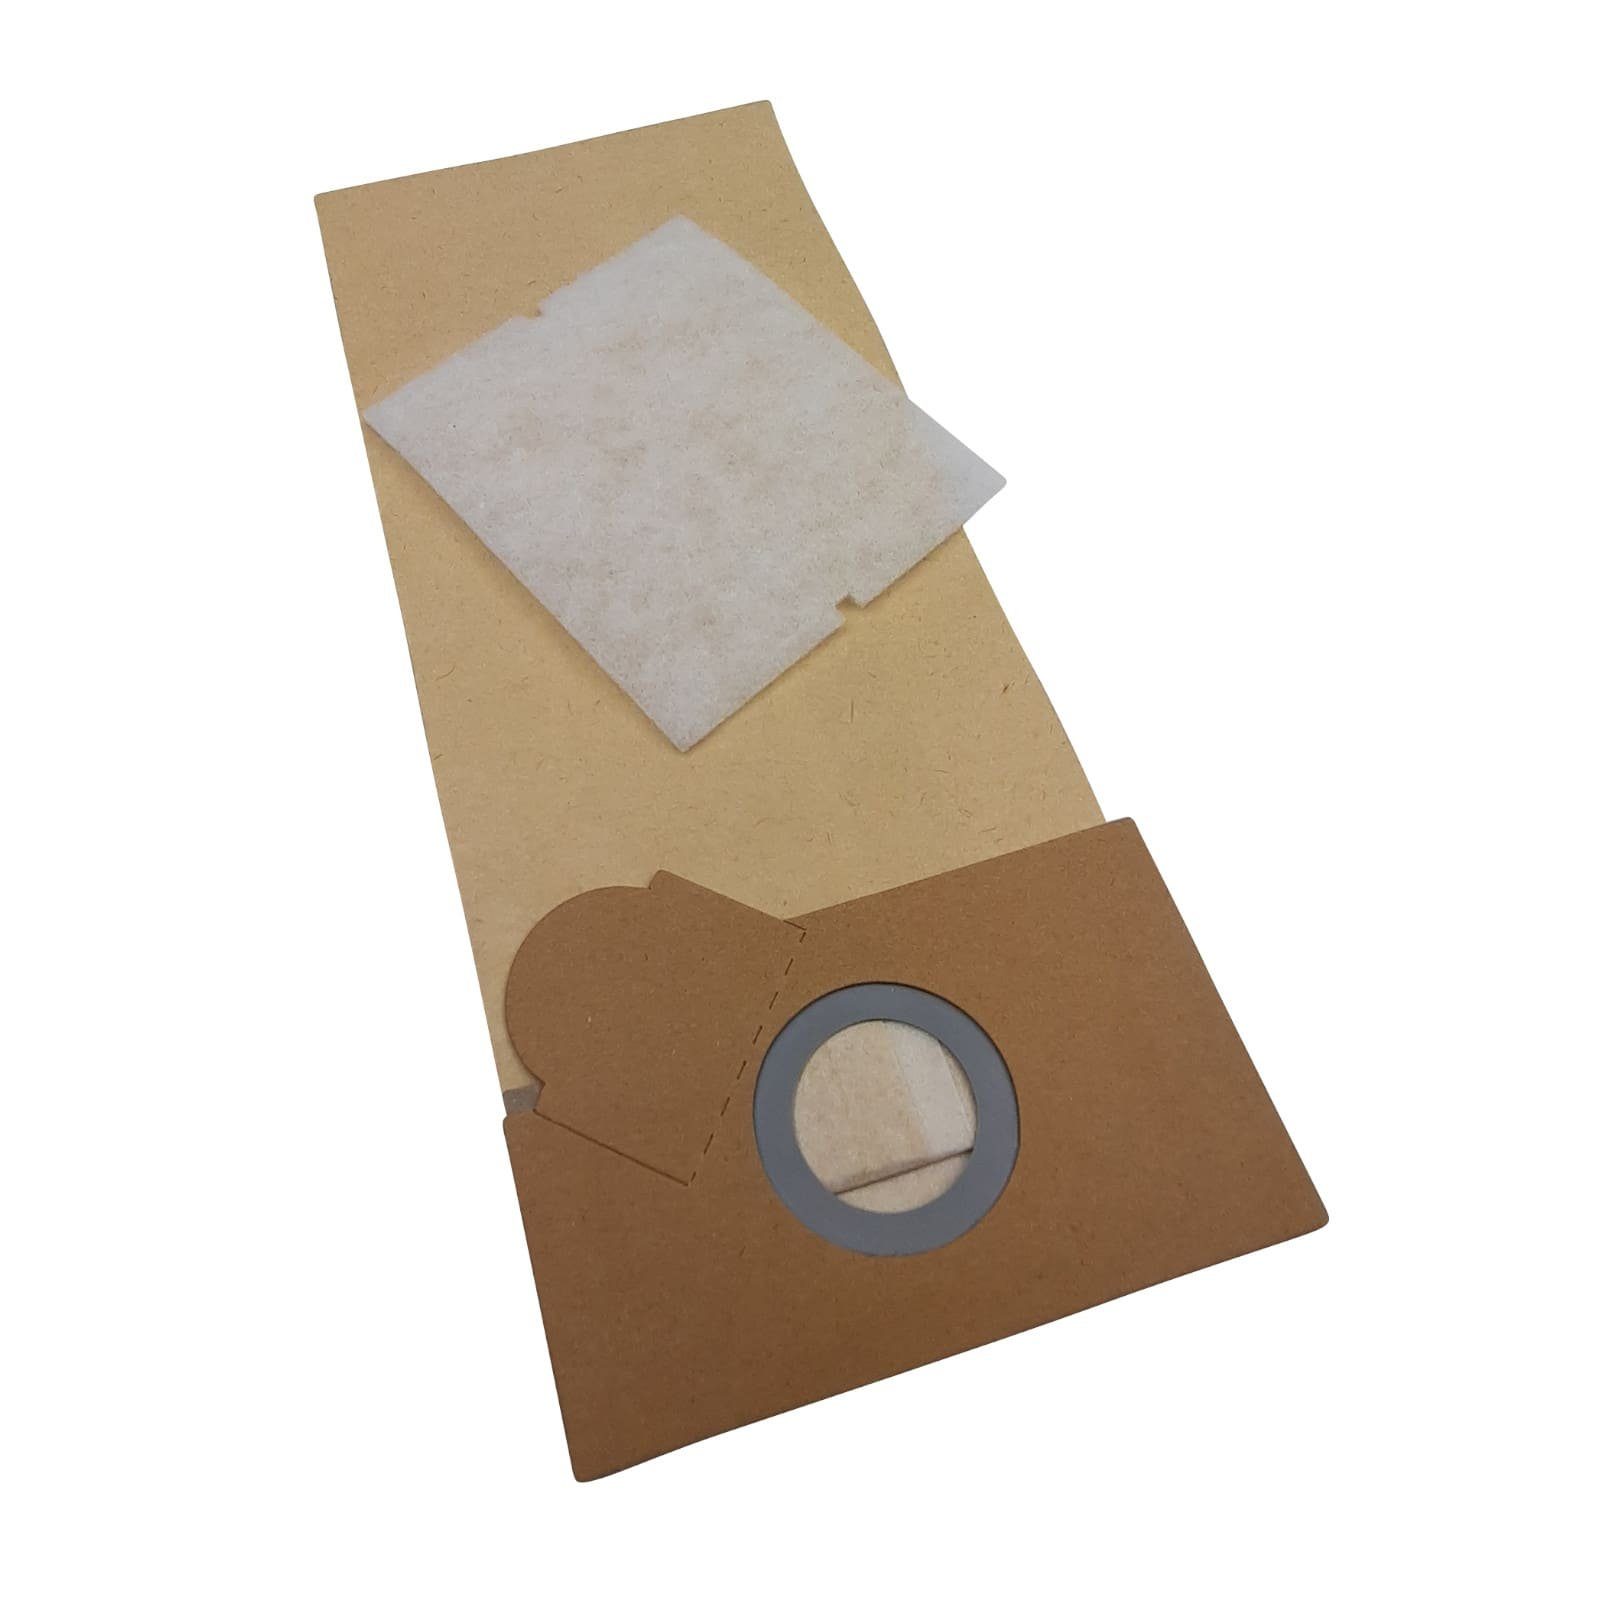 Reinica Staubsaugerbeutel passend für Nilco 1107-1417, 10er-Pack Staubbeutel Saugerbeutel Beutel Filtertüten | Staubsaugerbeutel